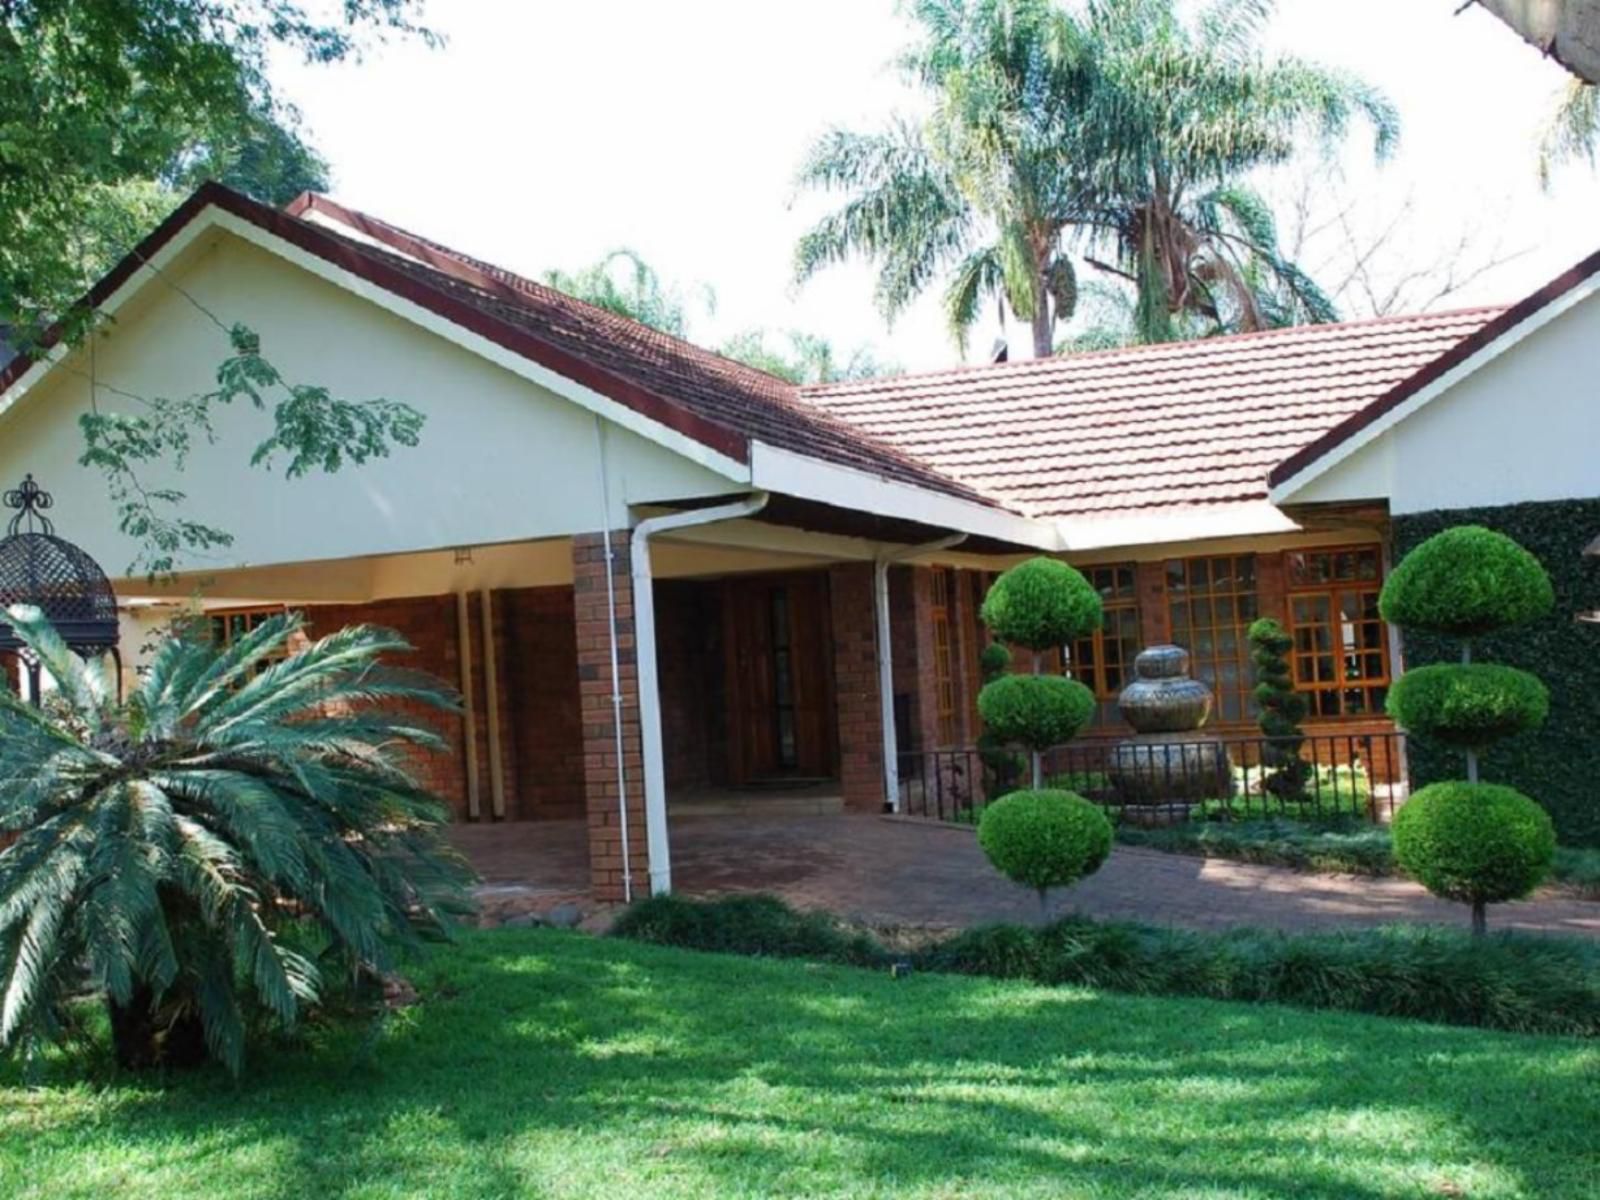 139 On Munnik Guest House Makhado Louis Trichardt Limpopo Province South Africa House, Building, Architecture